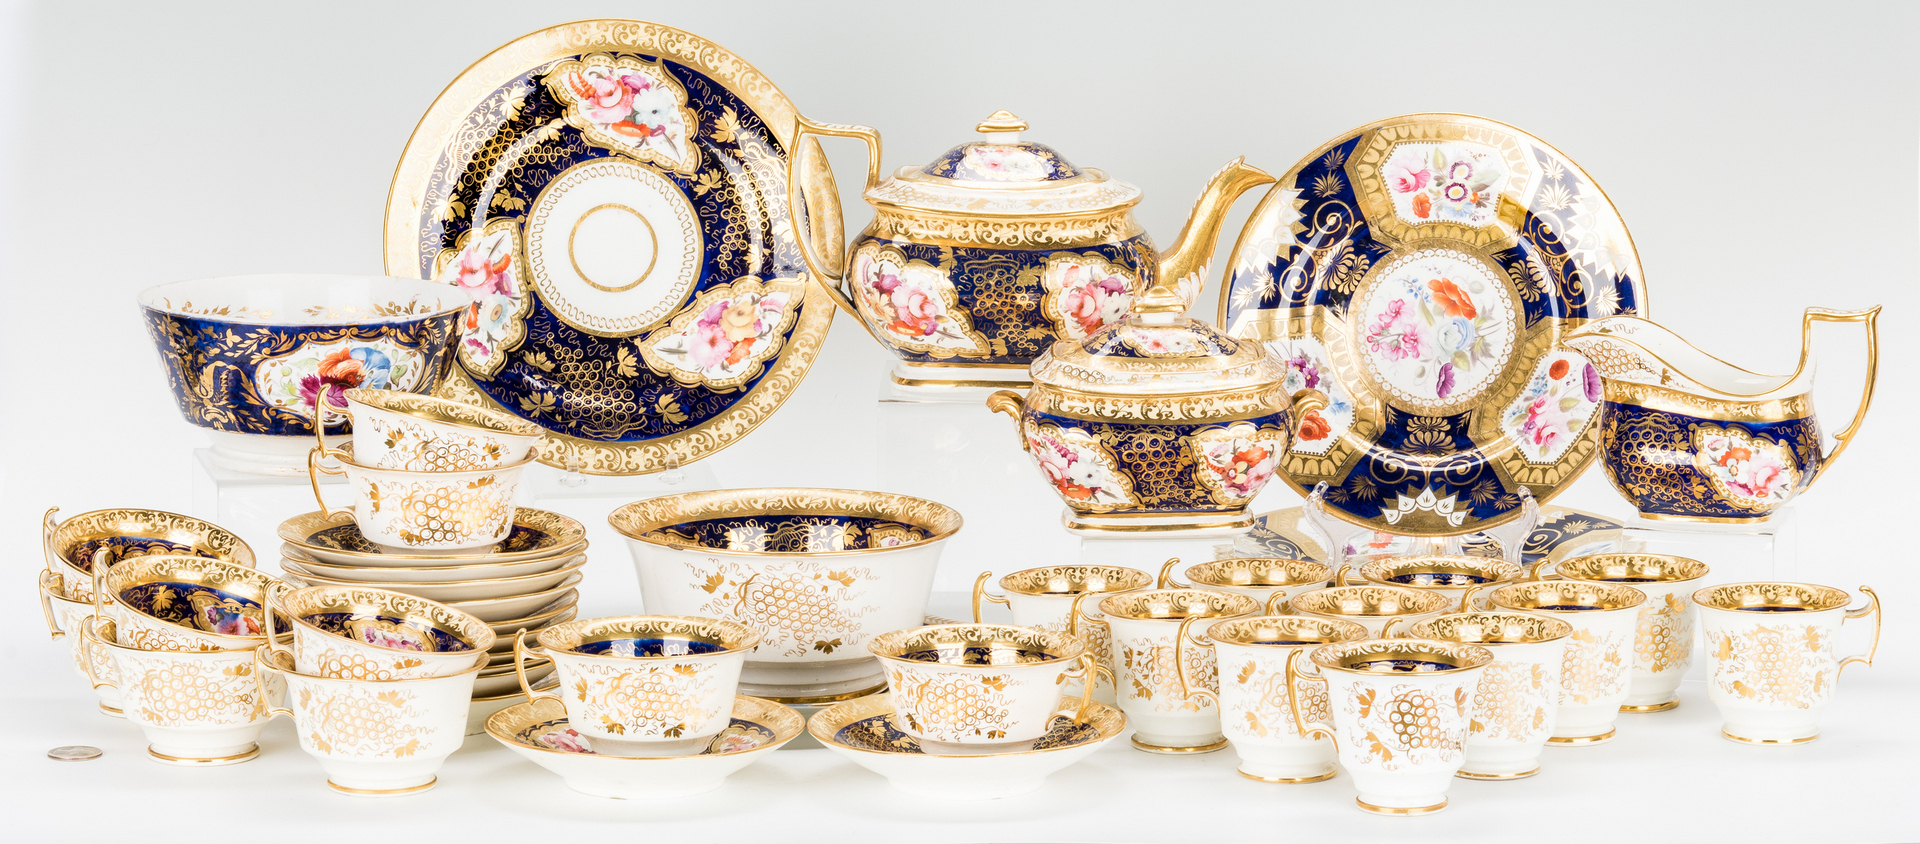 Lot 458: Assembled Group of Royal Worcester Porcelain, incl. Tea Service, 44 pcs.